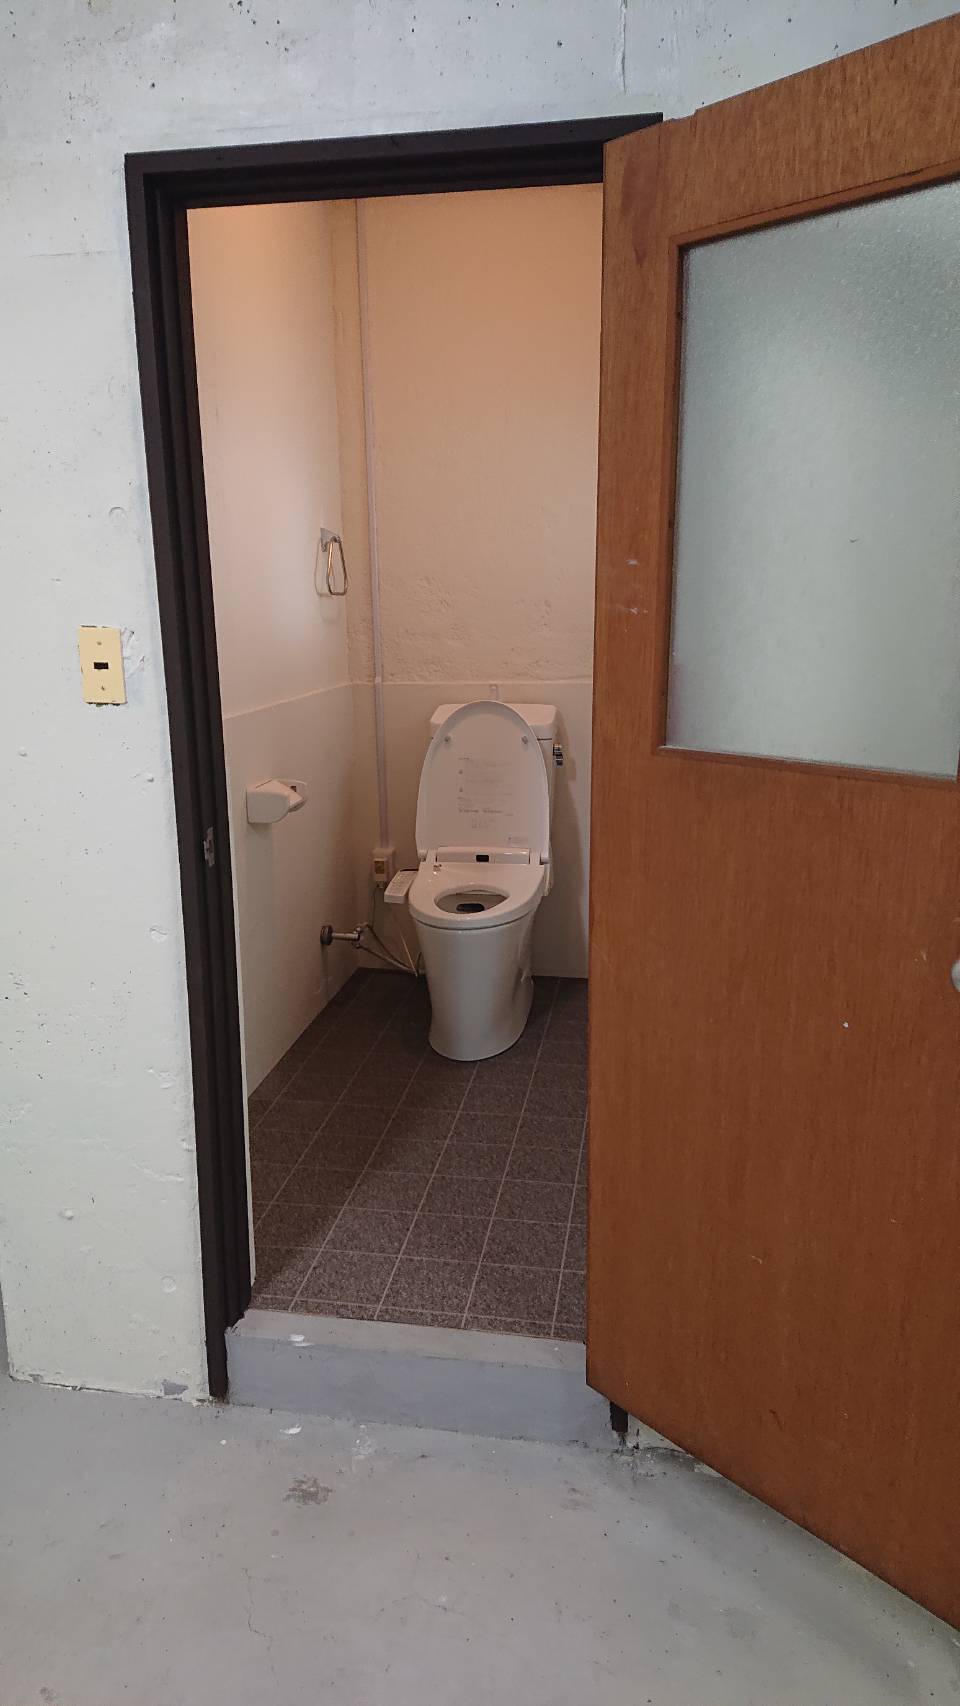 和式トイレ→洋式トイレ リフォーム工事 広島でレンジフード清掃や網戸張り替え業者をお探しなら美善ハウジングまで